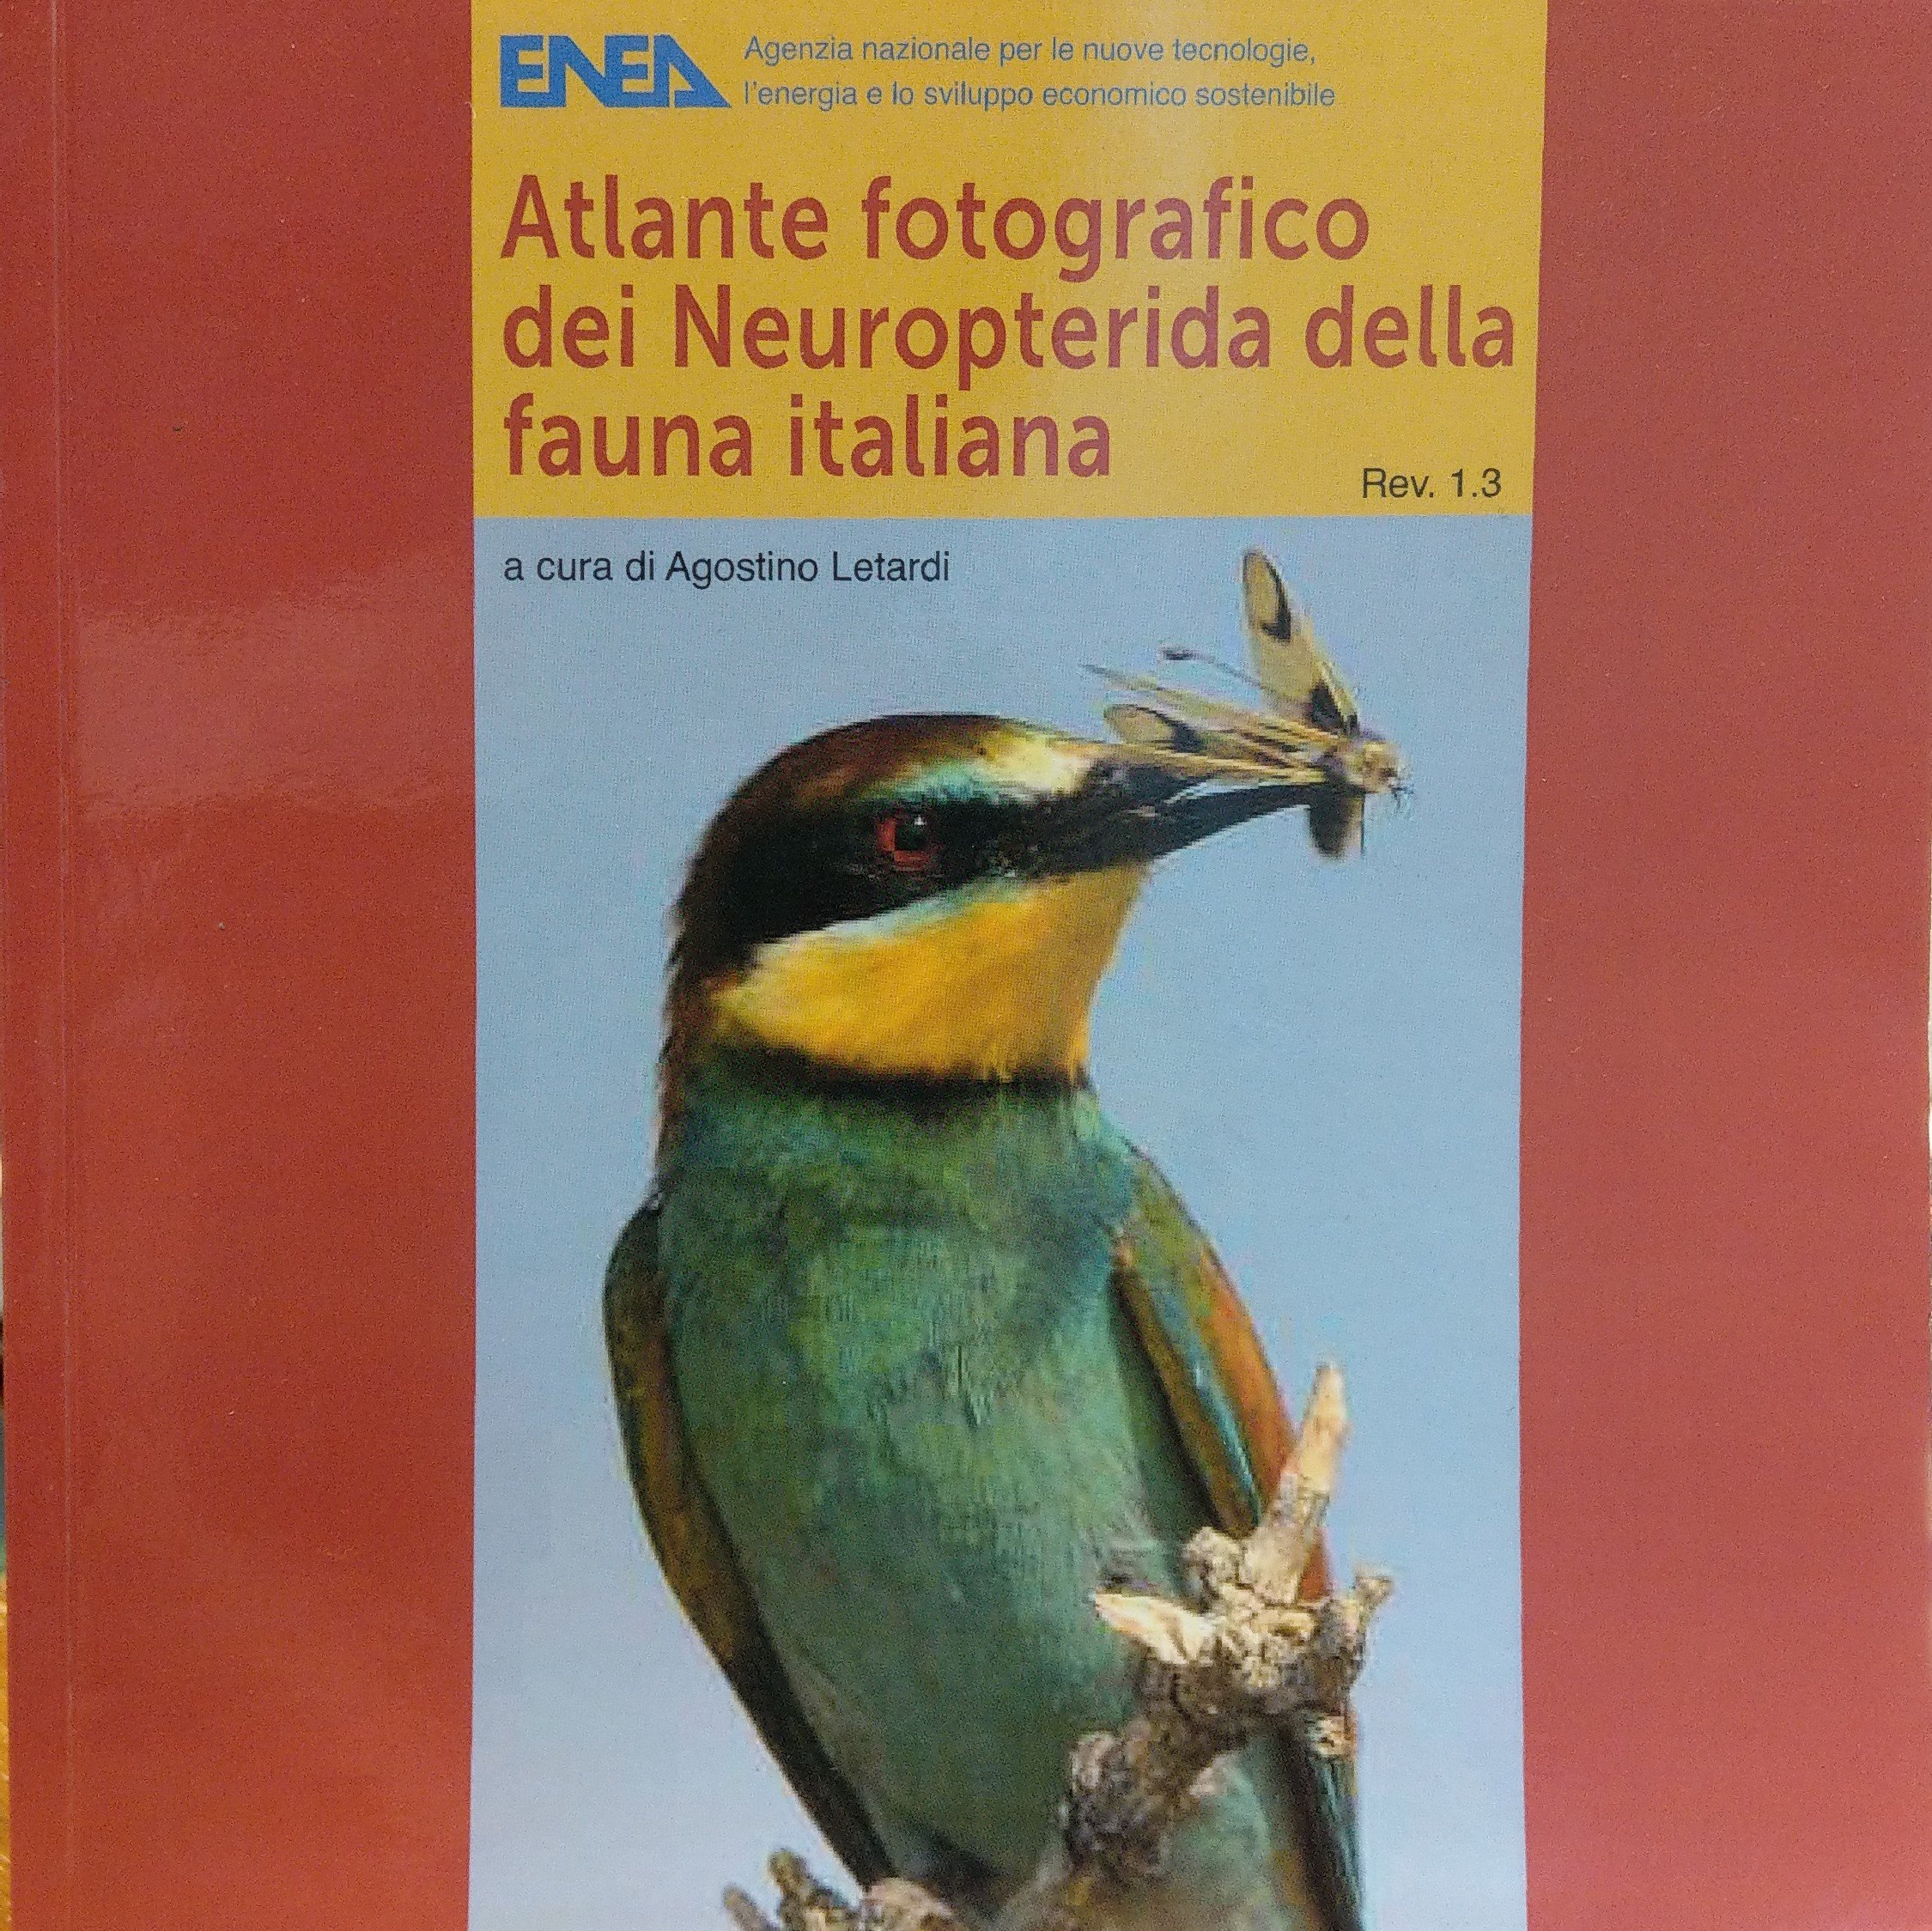 Atlante fotografico dei Neuropterida della fauna italiana (Rippl-Rónai Múzeum CC BY-NC-ND)